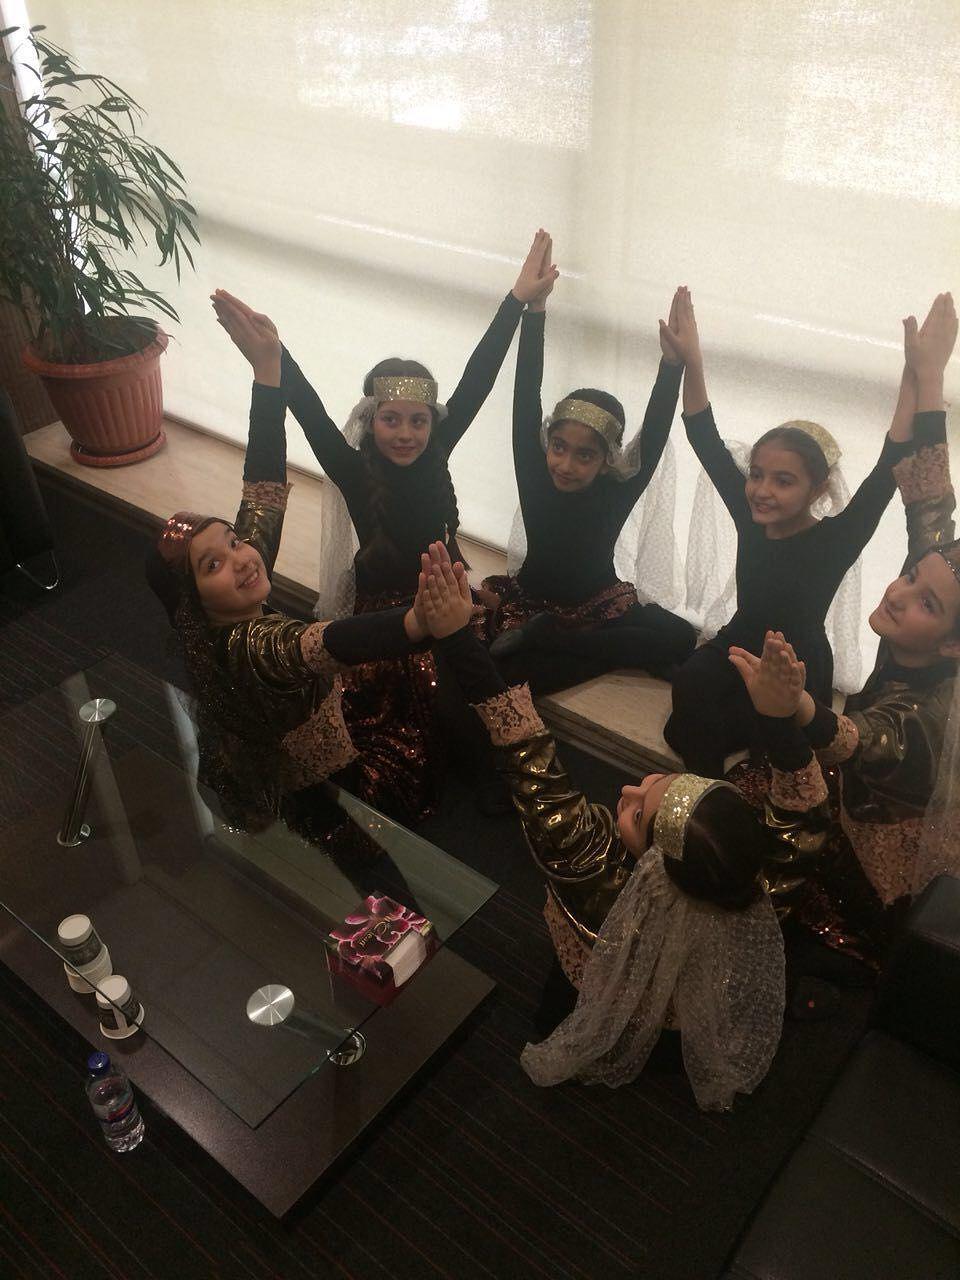 از ادعای رقص زنان برای مردان در برج میلاد تا انتشار عکس چند دختر بچه!